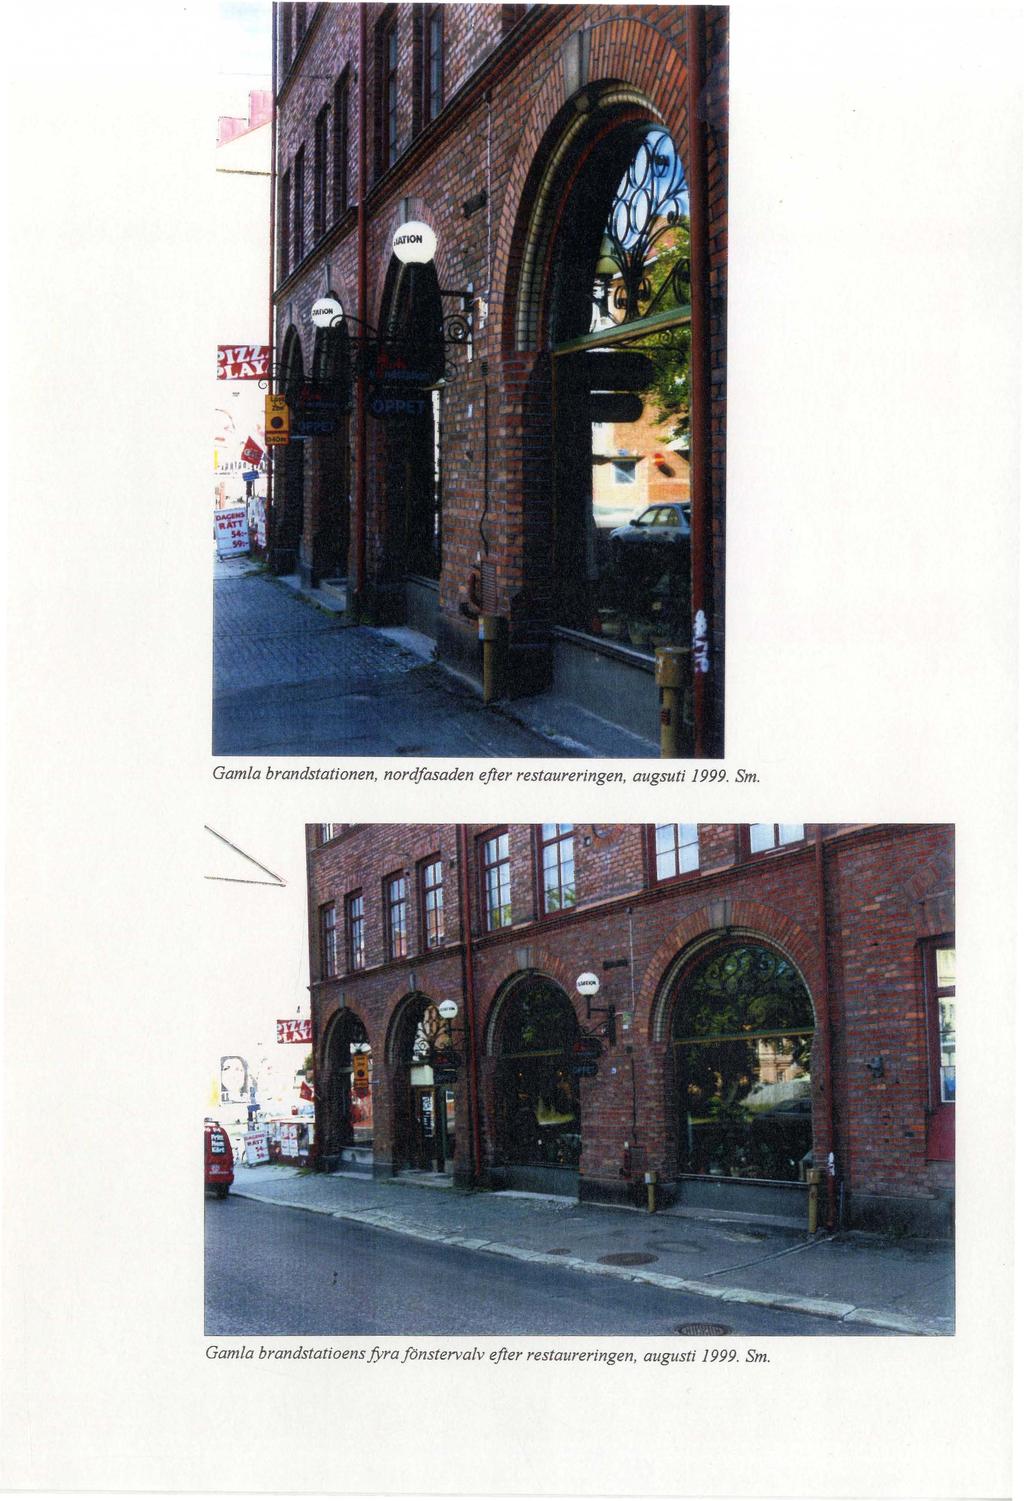 Gamla brandstationen, nordfasaden efter restaureringen, augsuti 1999. Sm.